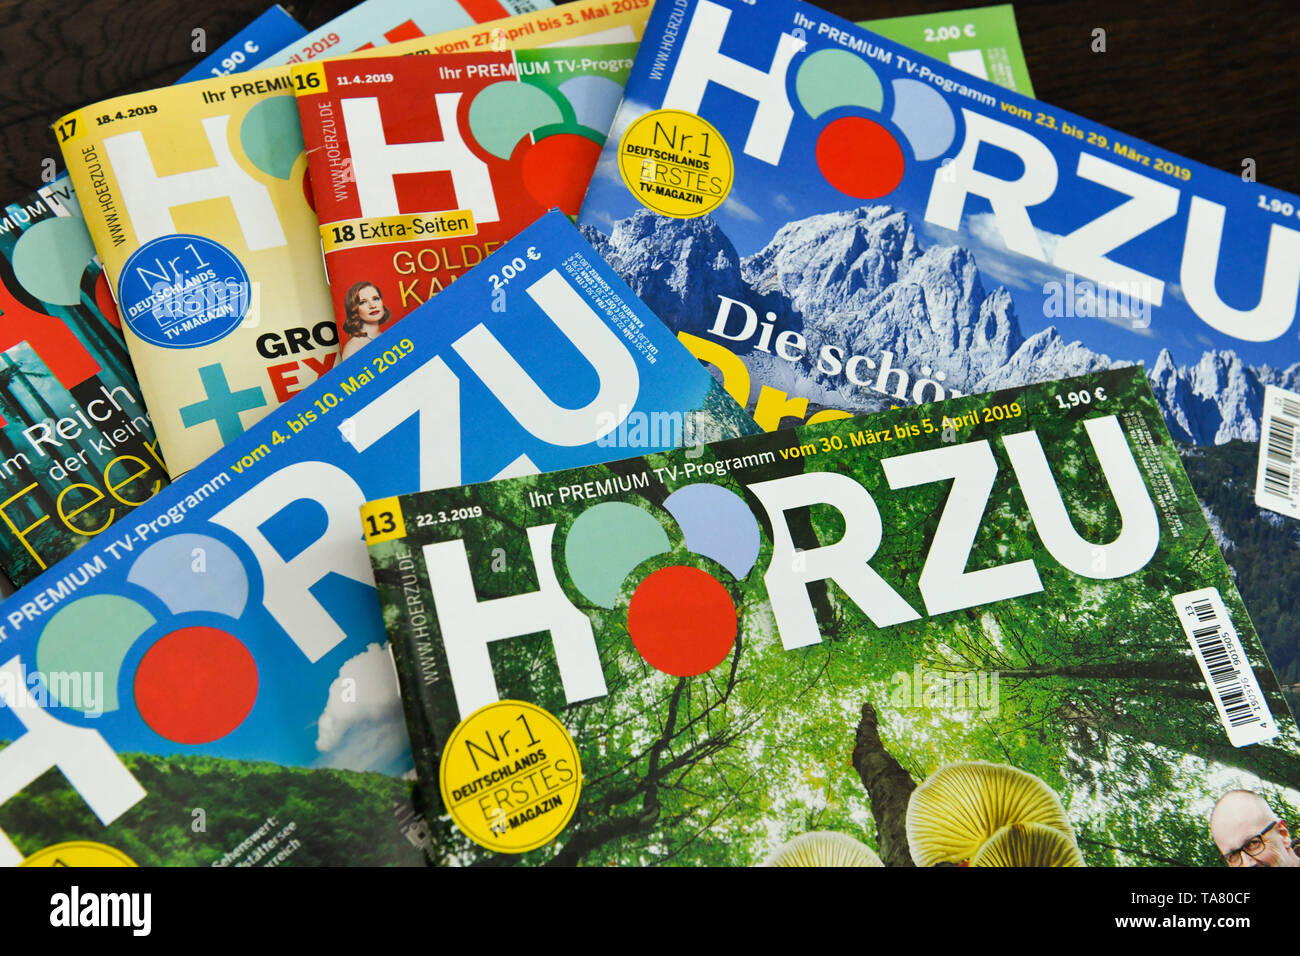 h-rzu-tv-guide-h-rzu-programmzeitschrift-stock-photo-alamy